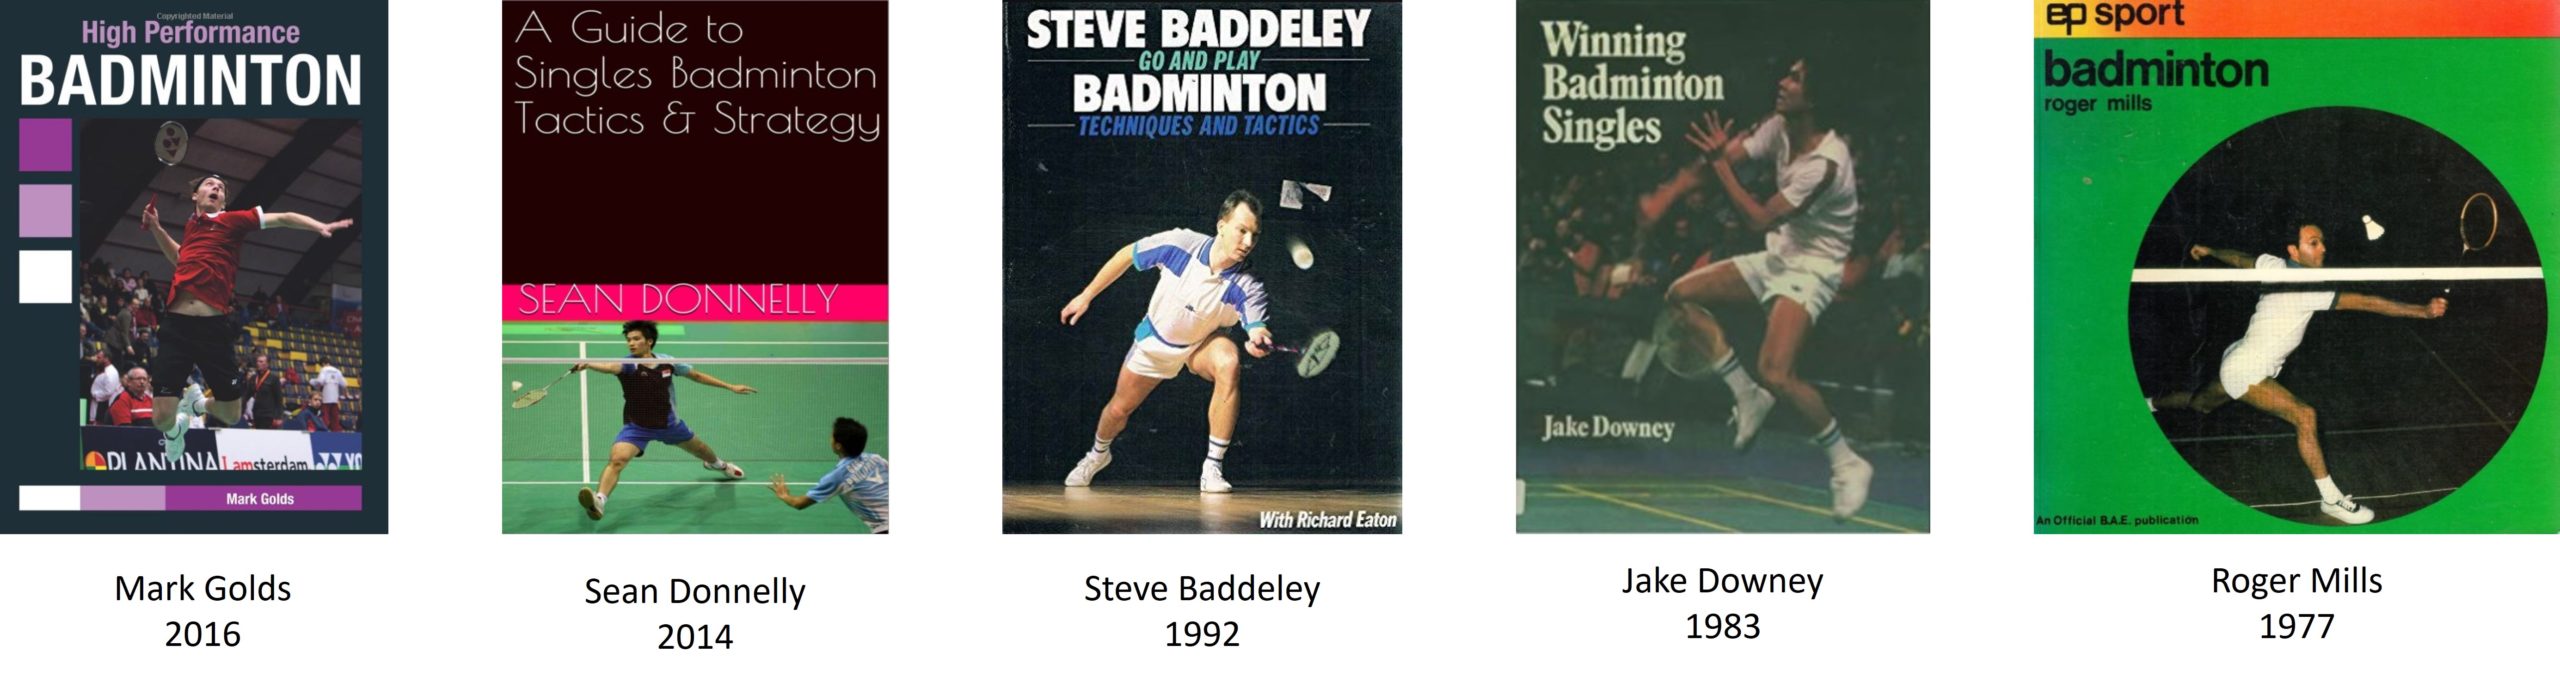 Badminton Singles Tactics